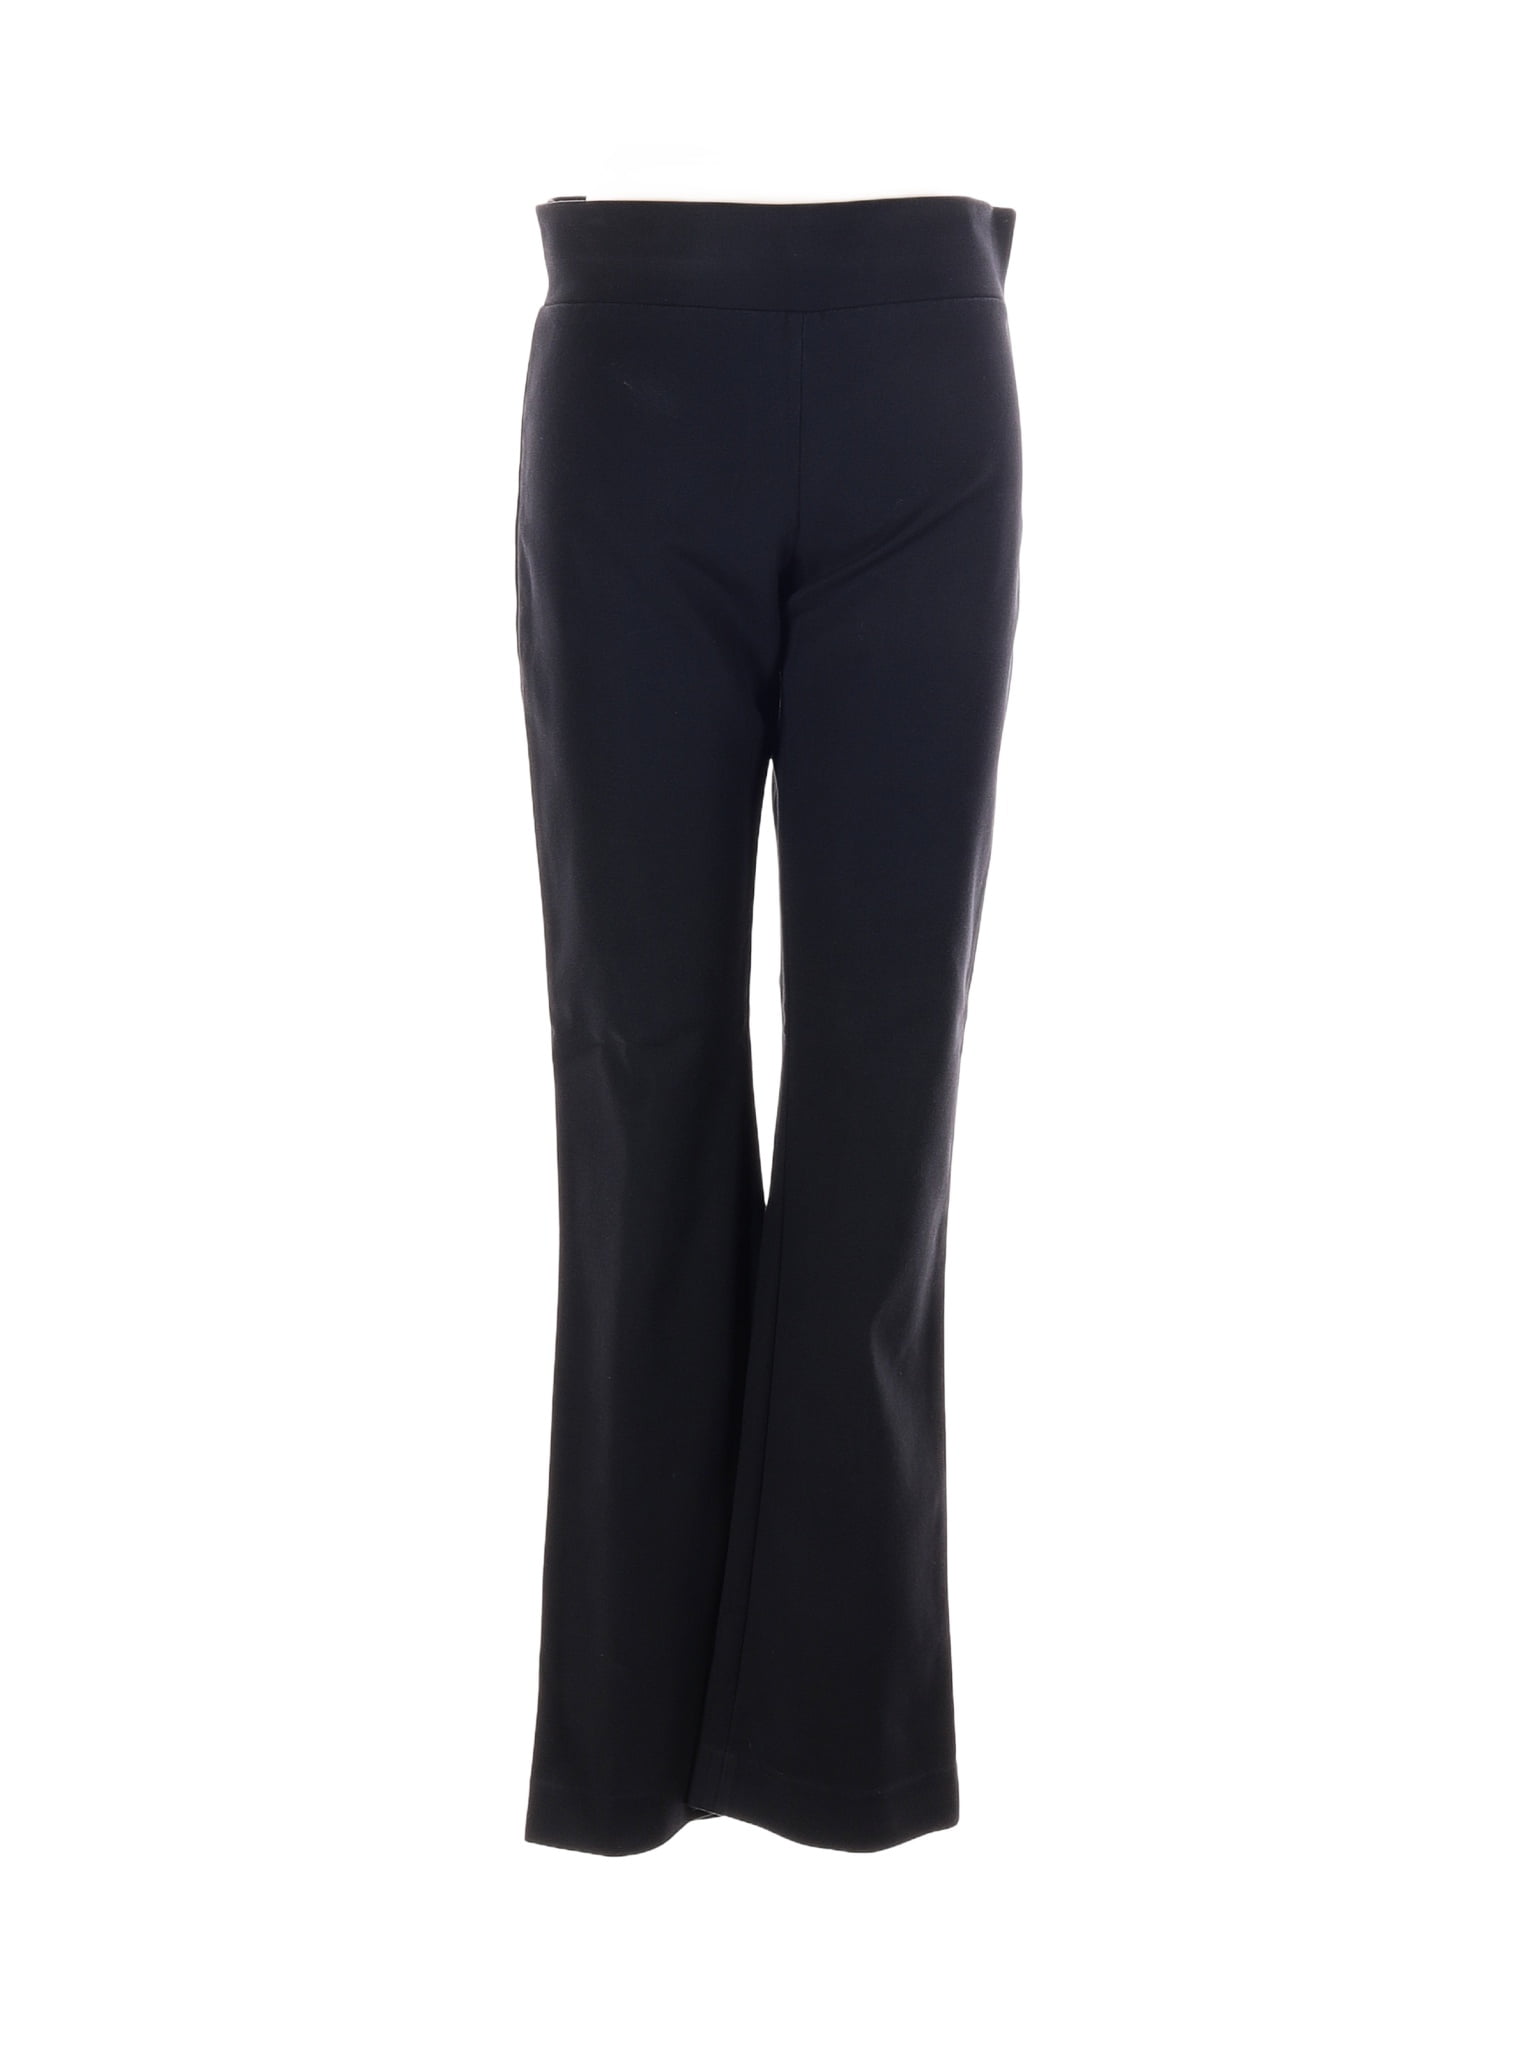 Elliott Lauren Solid Black Casual Pants Size 8 - 84% off | thredUP